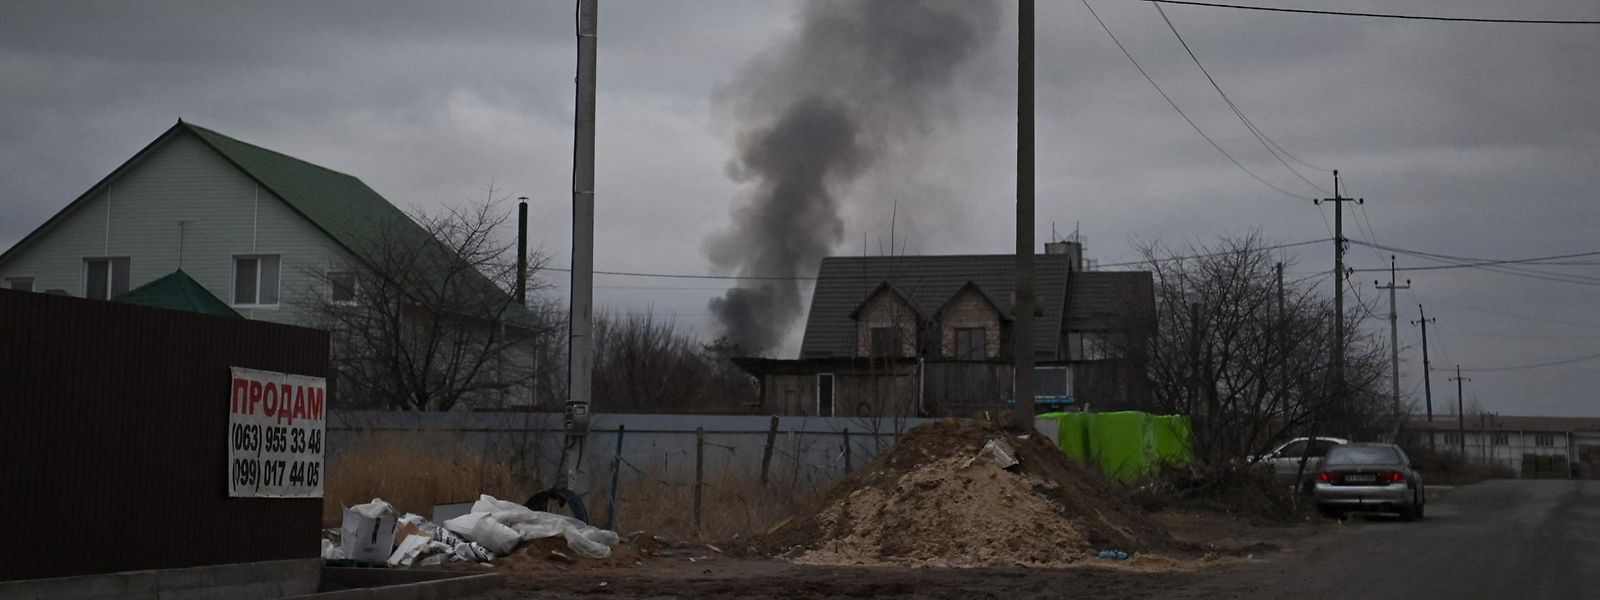 Durante o dia de quinta-feira, o Exército ucraniano anunciou que estavam em curso combates pelo controlo do aeroporto militar Antonov.